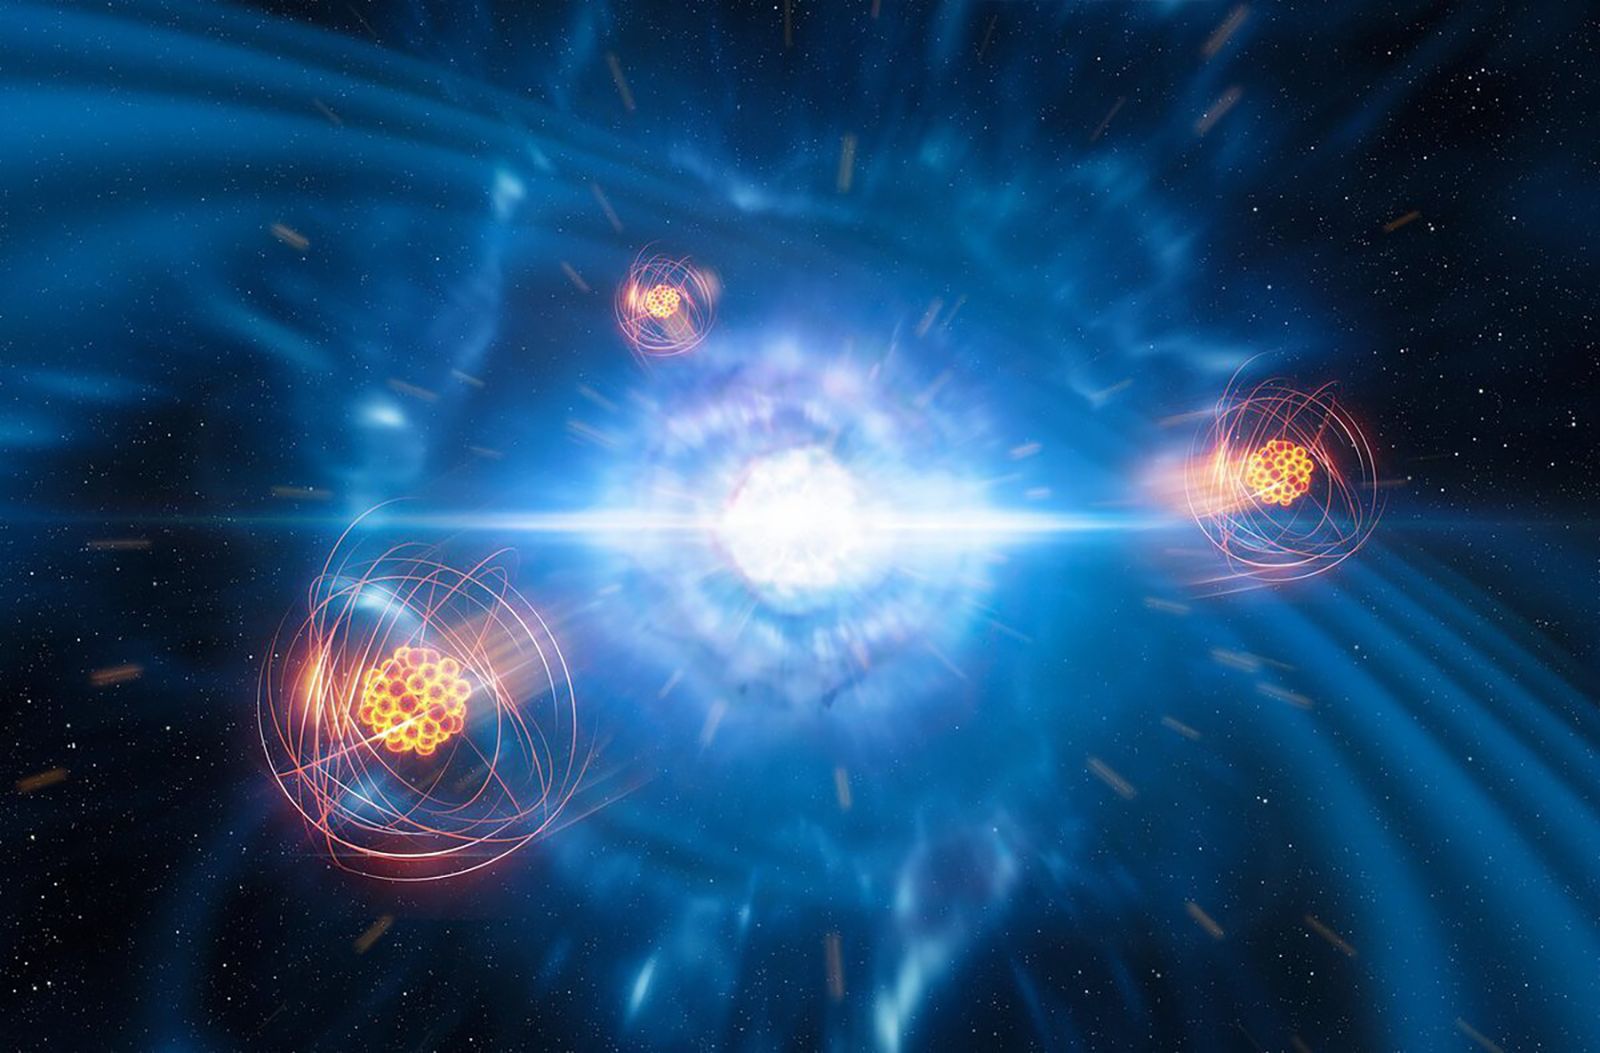 Neutron Star: What is a Neutron Star